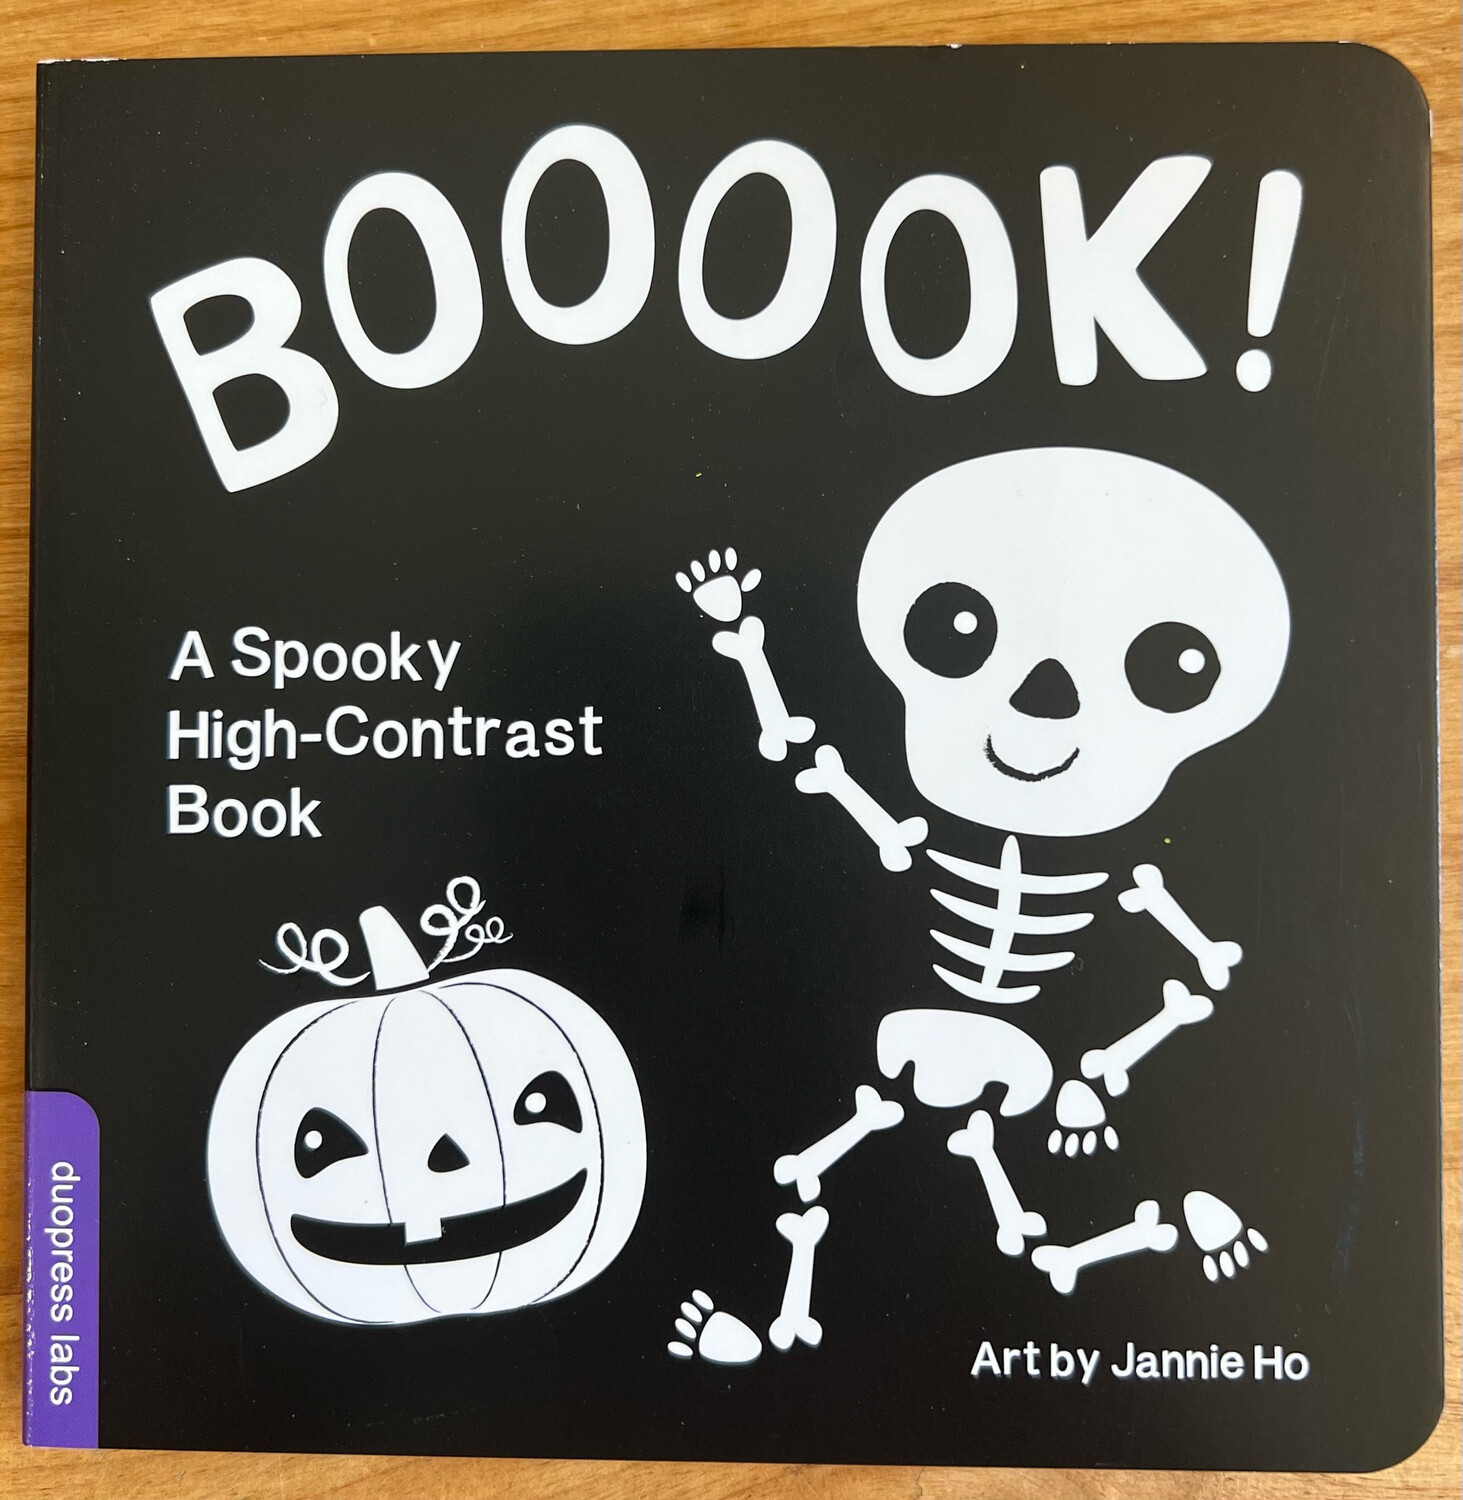 BOOOOOK! A Spooky Book